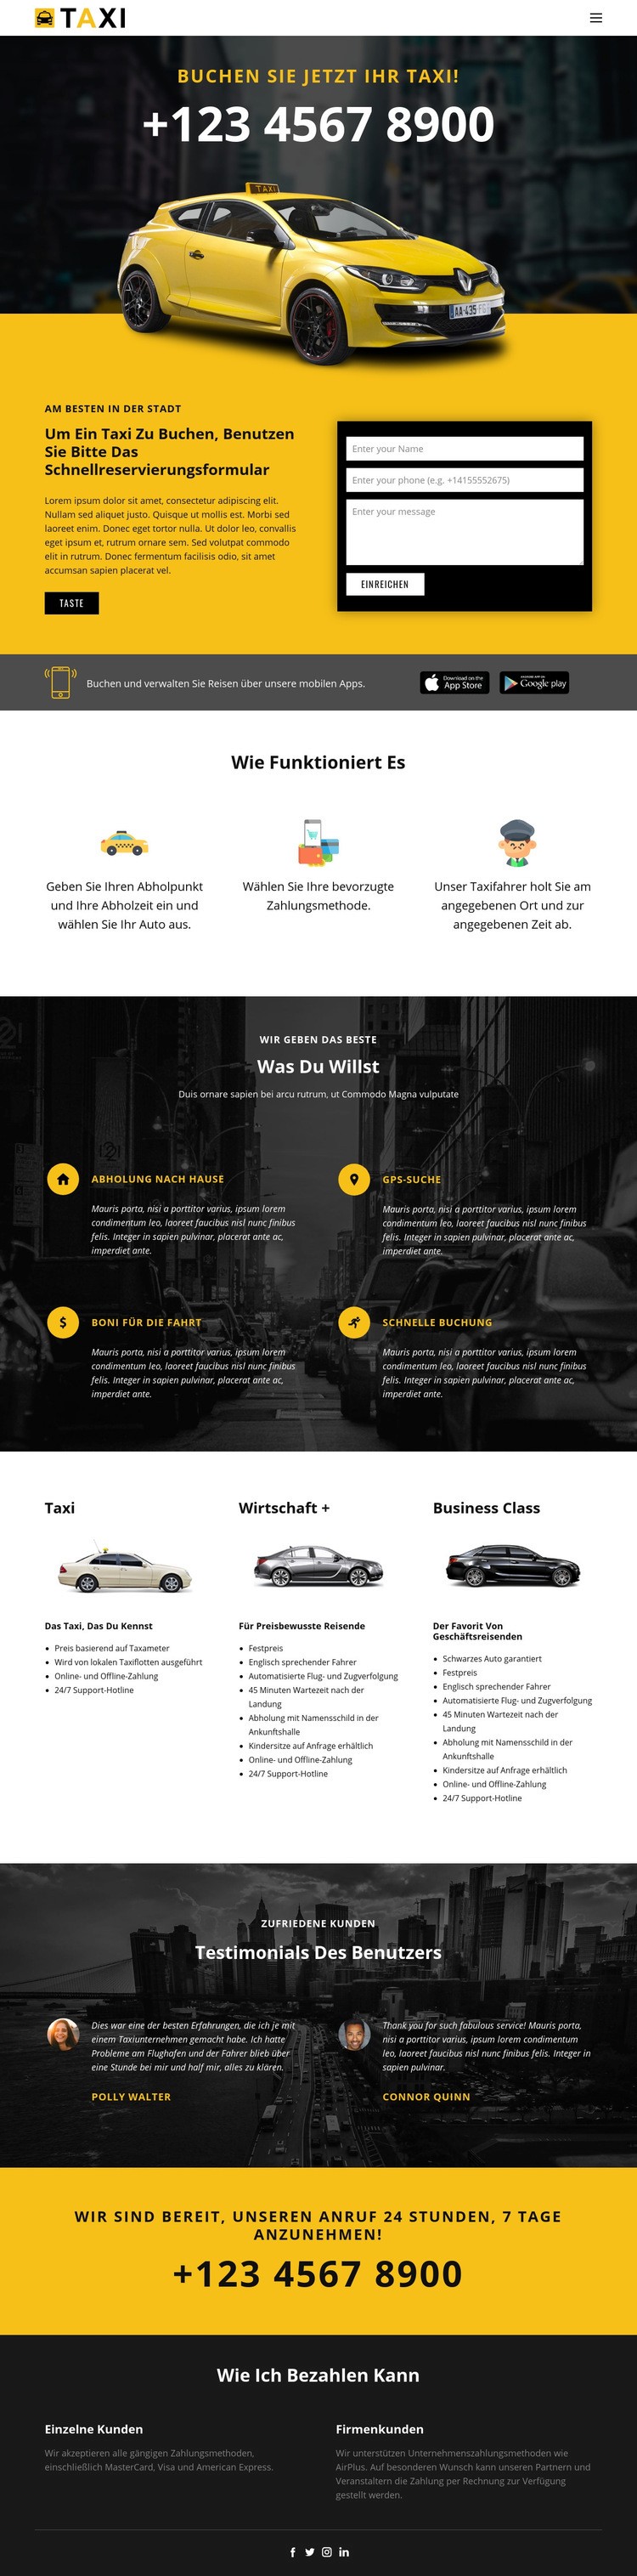 Schnellste Taxis Website Builder-Vorlagen